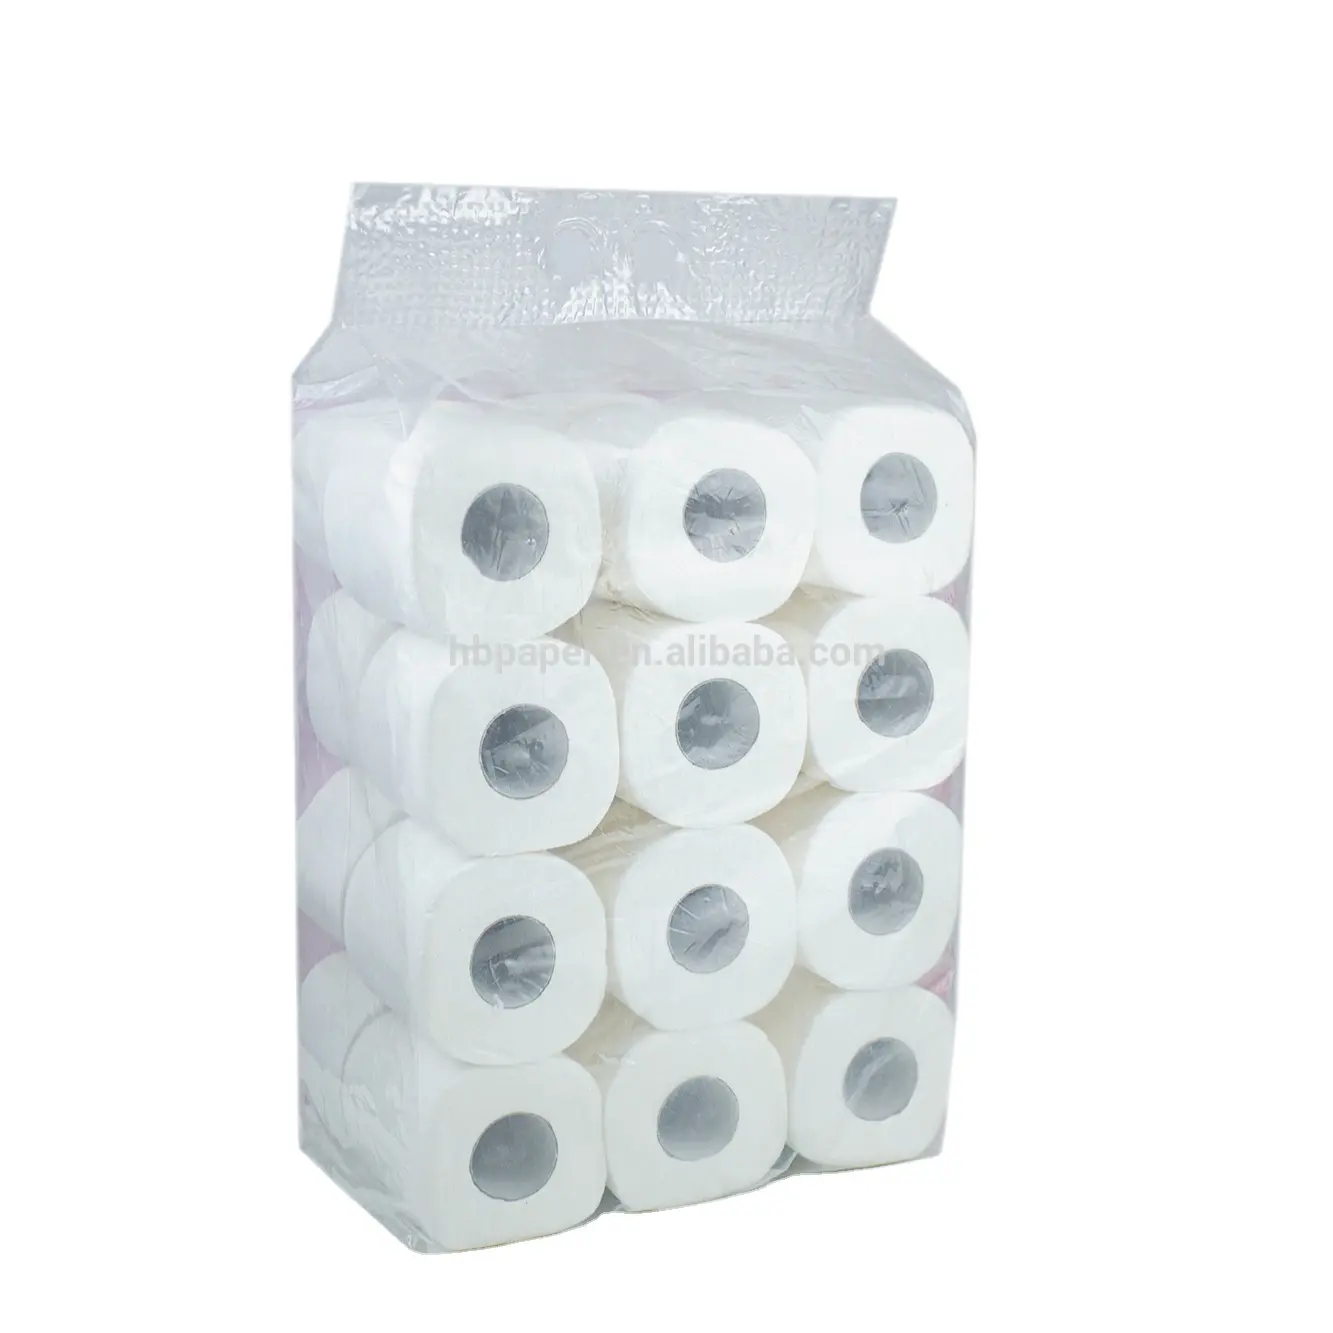 Rotolo di carta igienica con nucleo solubile in acqua in polpa vergine all'ingrosso OEM di buona qualità morbido 1 velo/2 veli/3 veli di carta igienica bianca